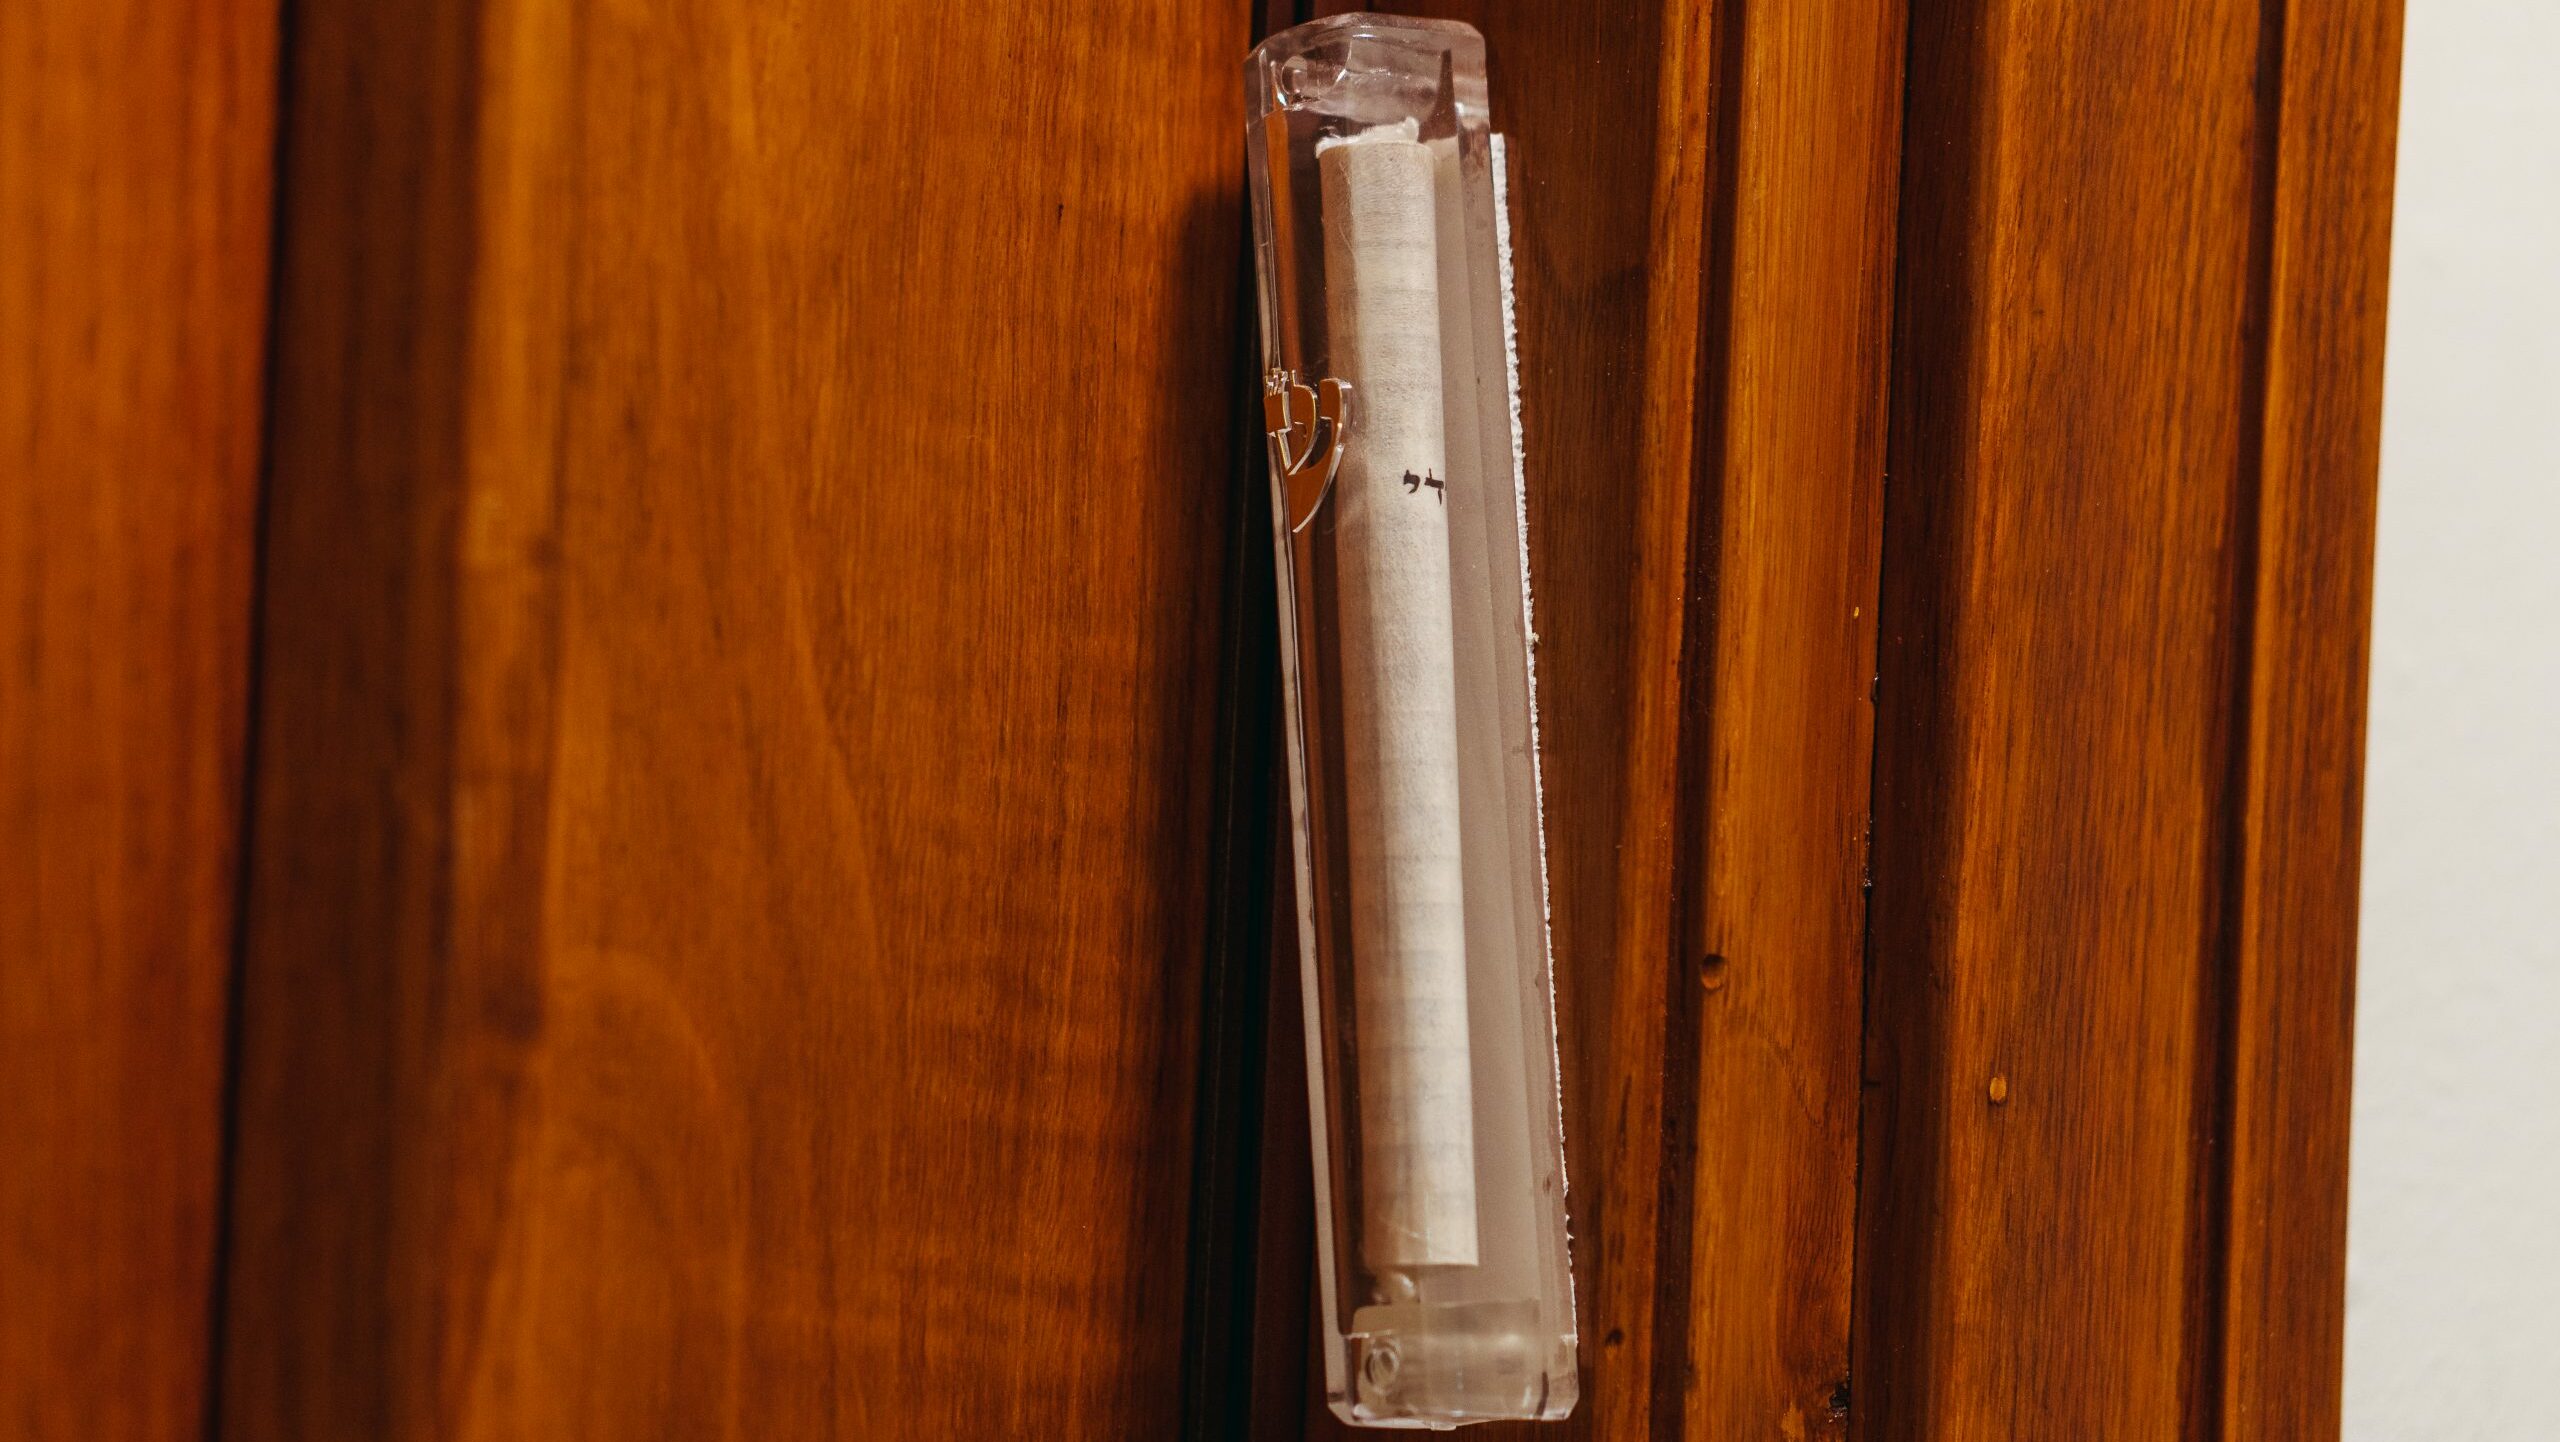 Mezuzah door jamb. Attaches to an external door jamb in a Jewish house.